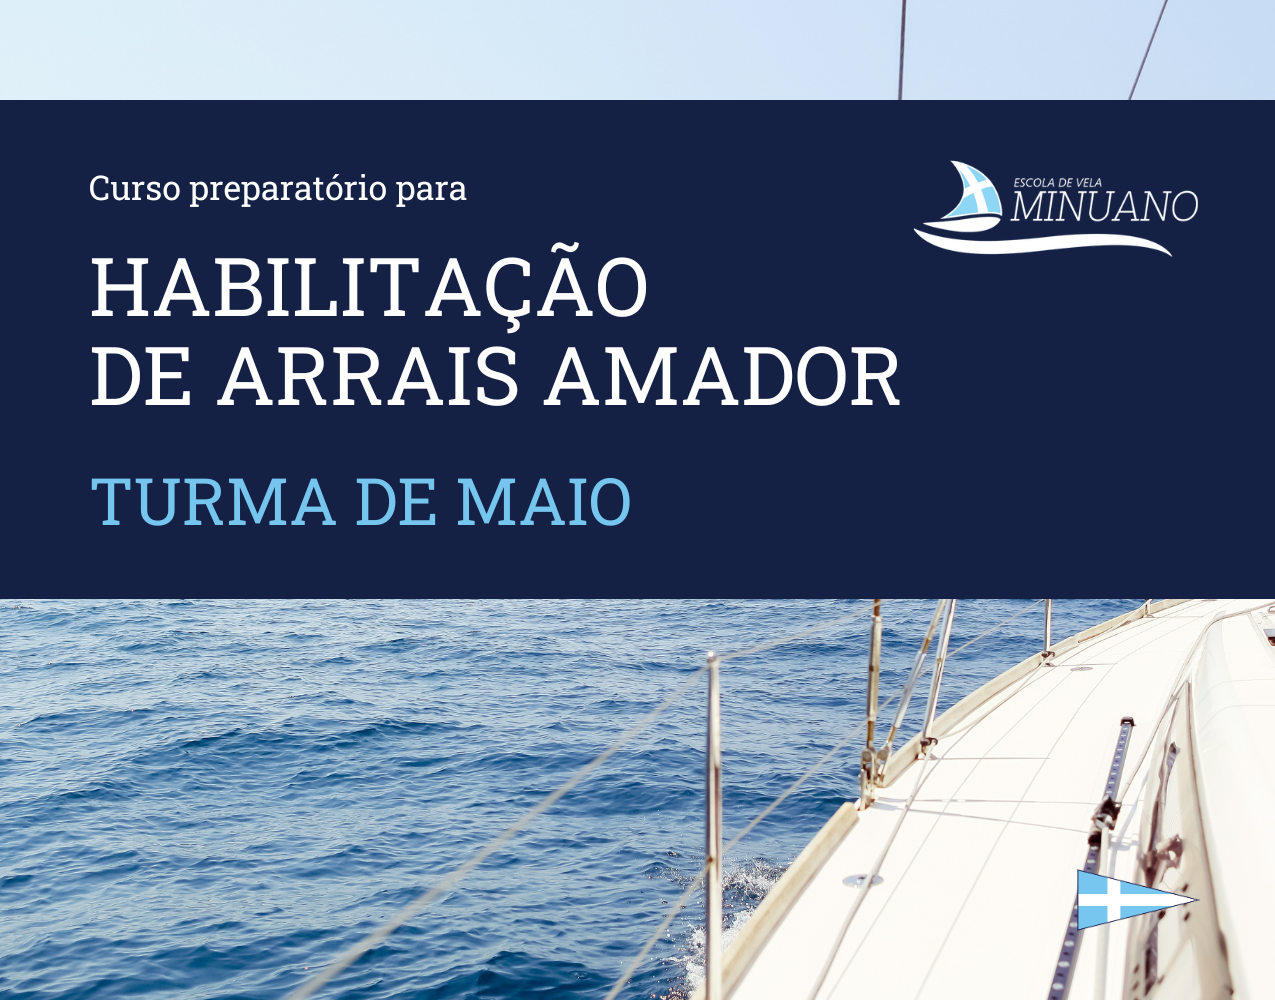 Curso preparatório para habilitação de Arrais Amador - Turma de Maio. Inscreva-se!